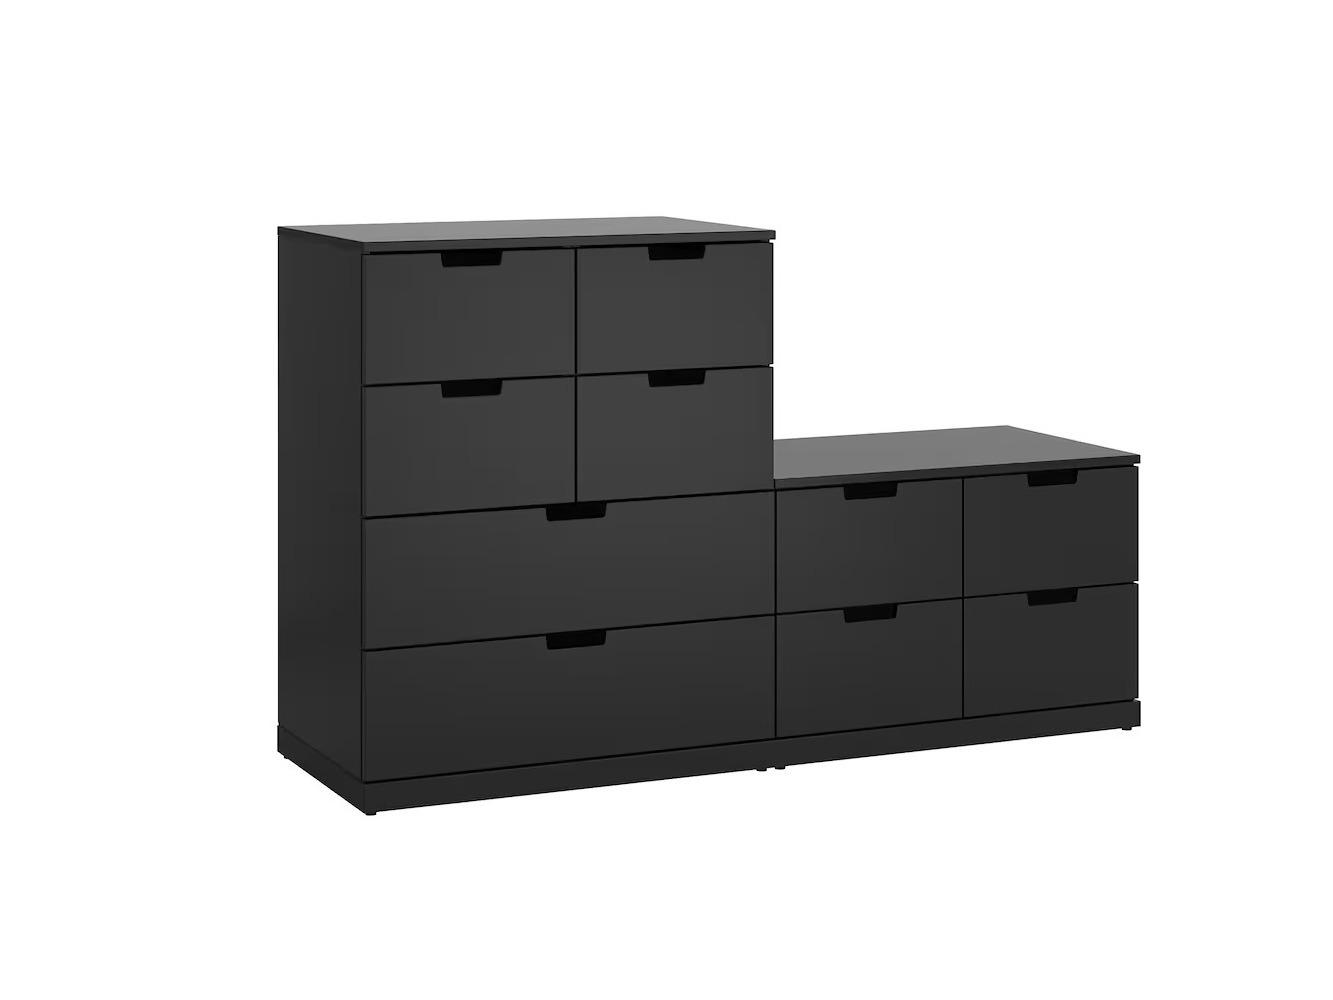 Комод Нордли 38 black ИКЕА (IKEA) изображение товара